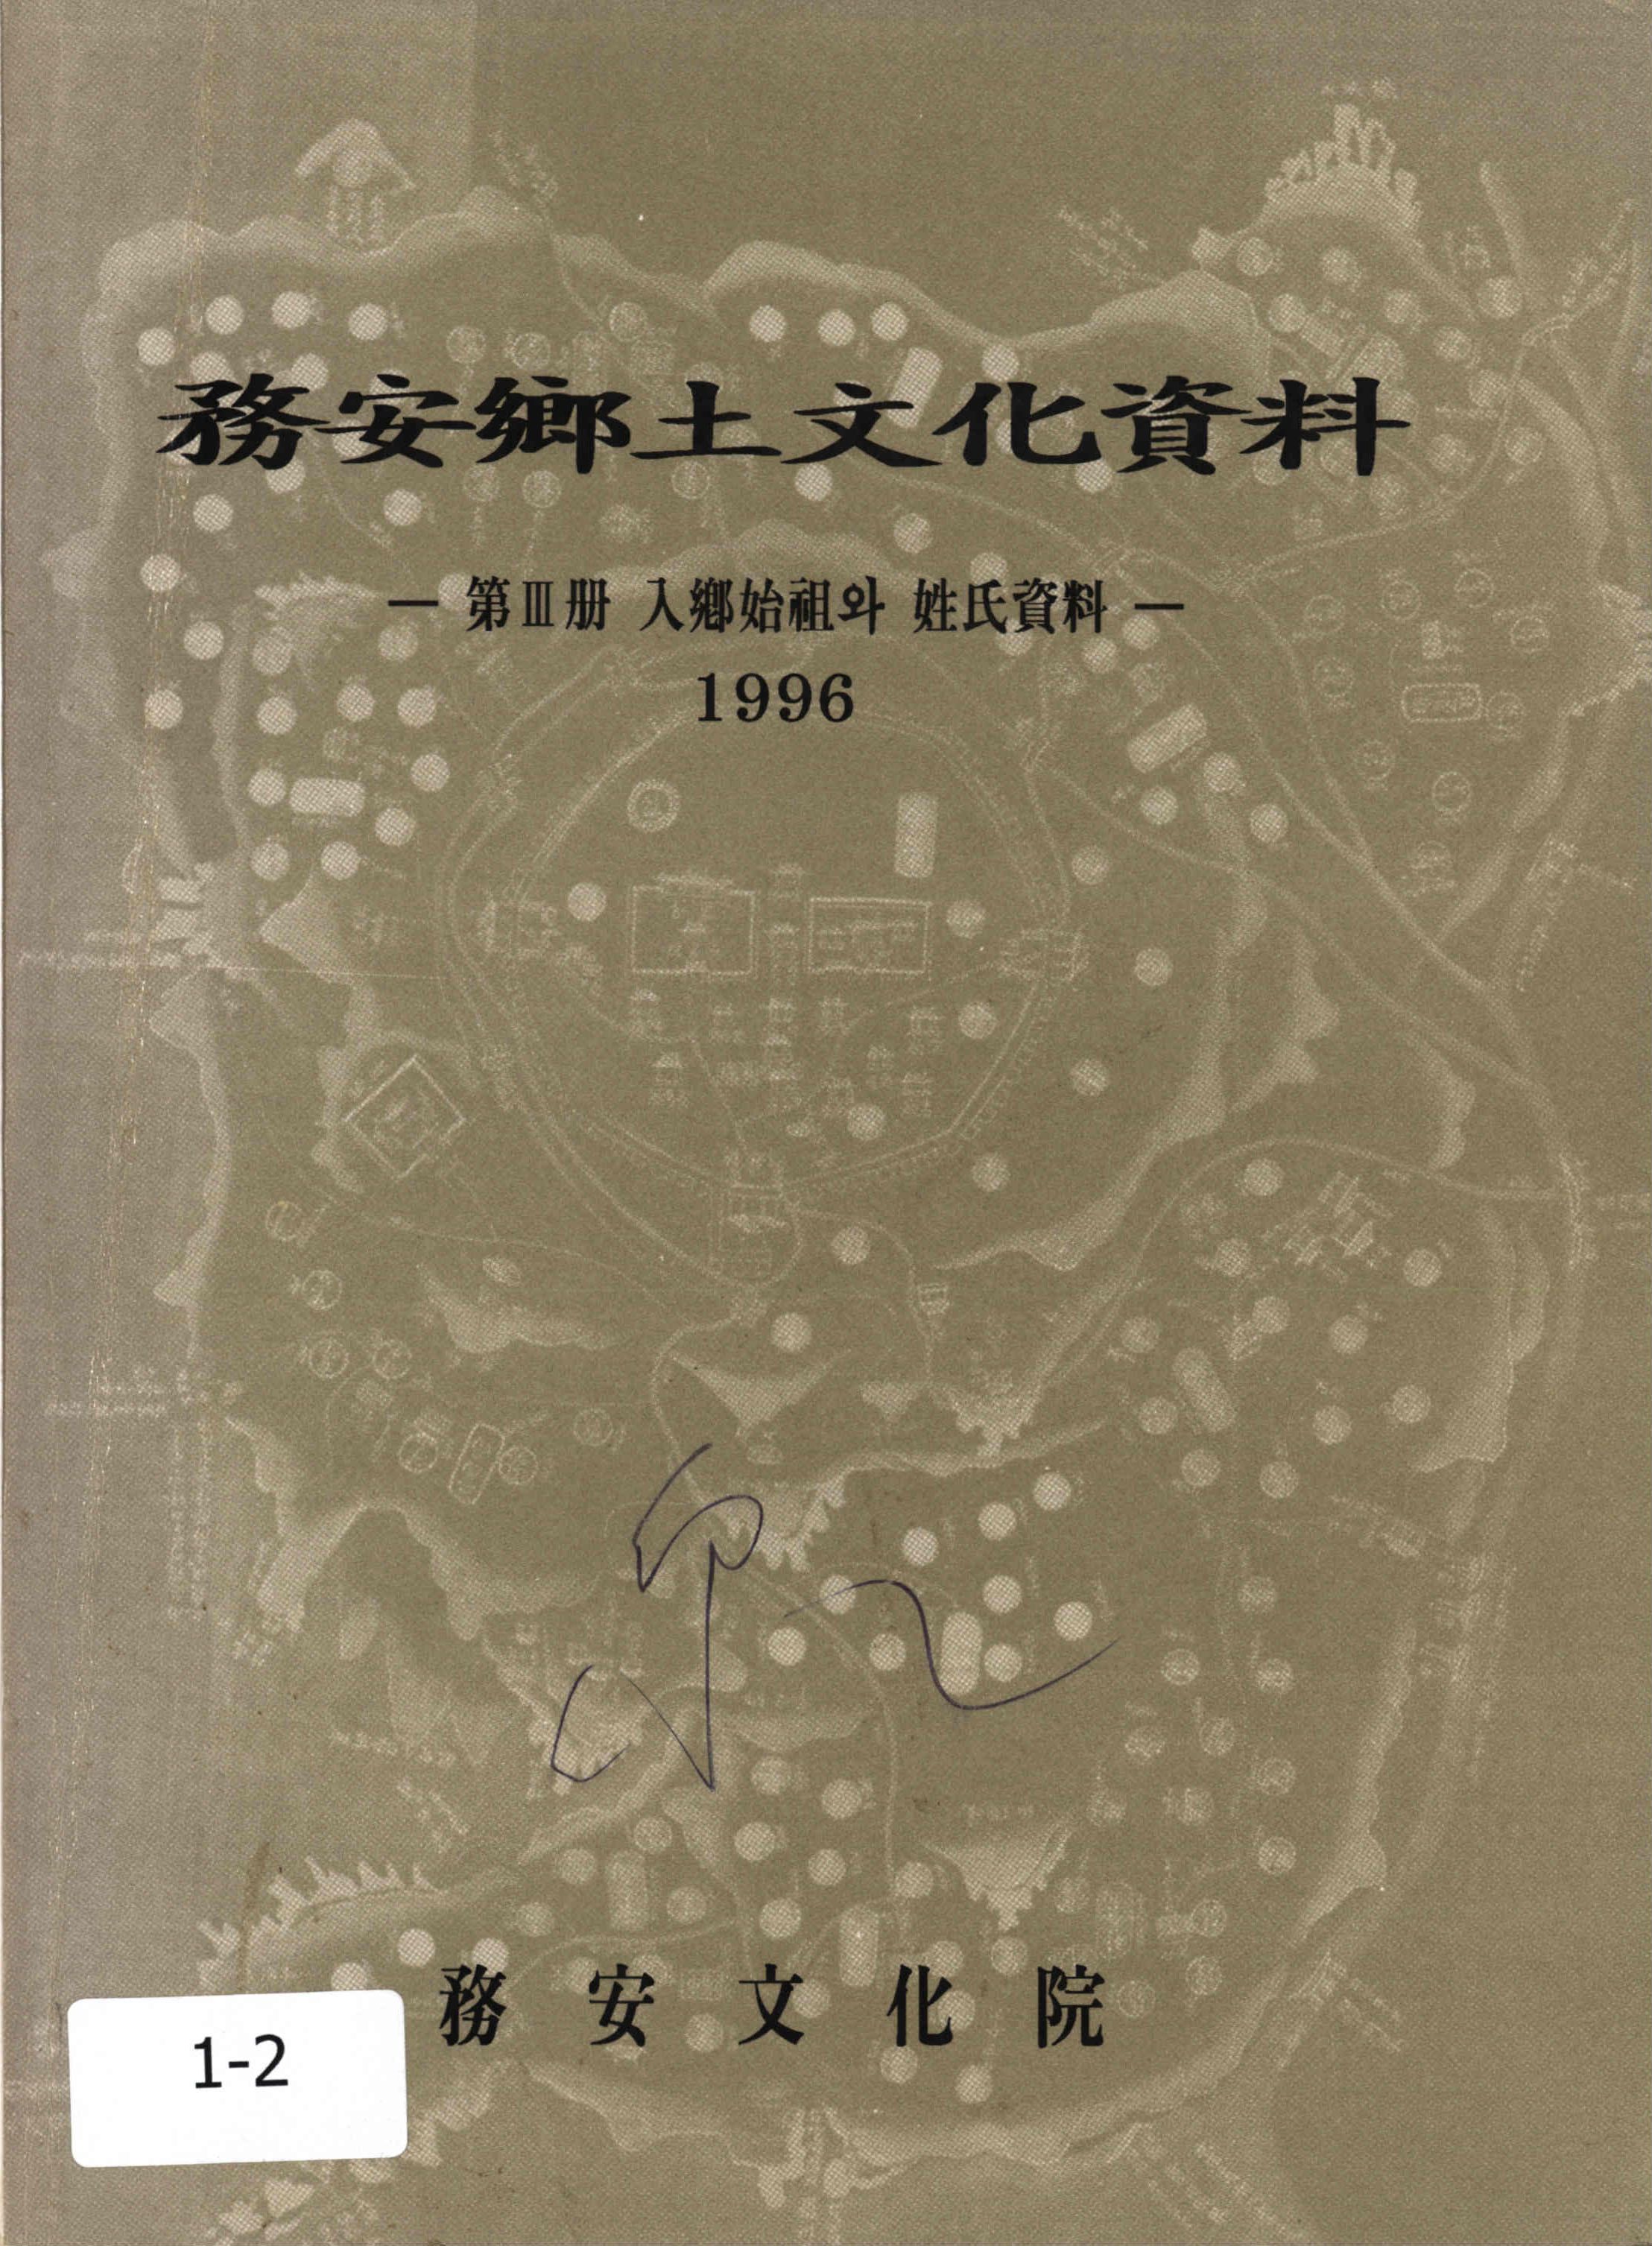 務安鄕土文化資料1996 (무안향토문화자료1996)